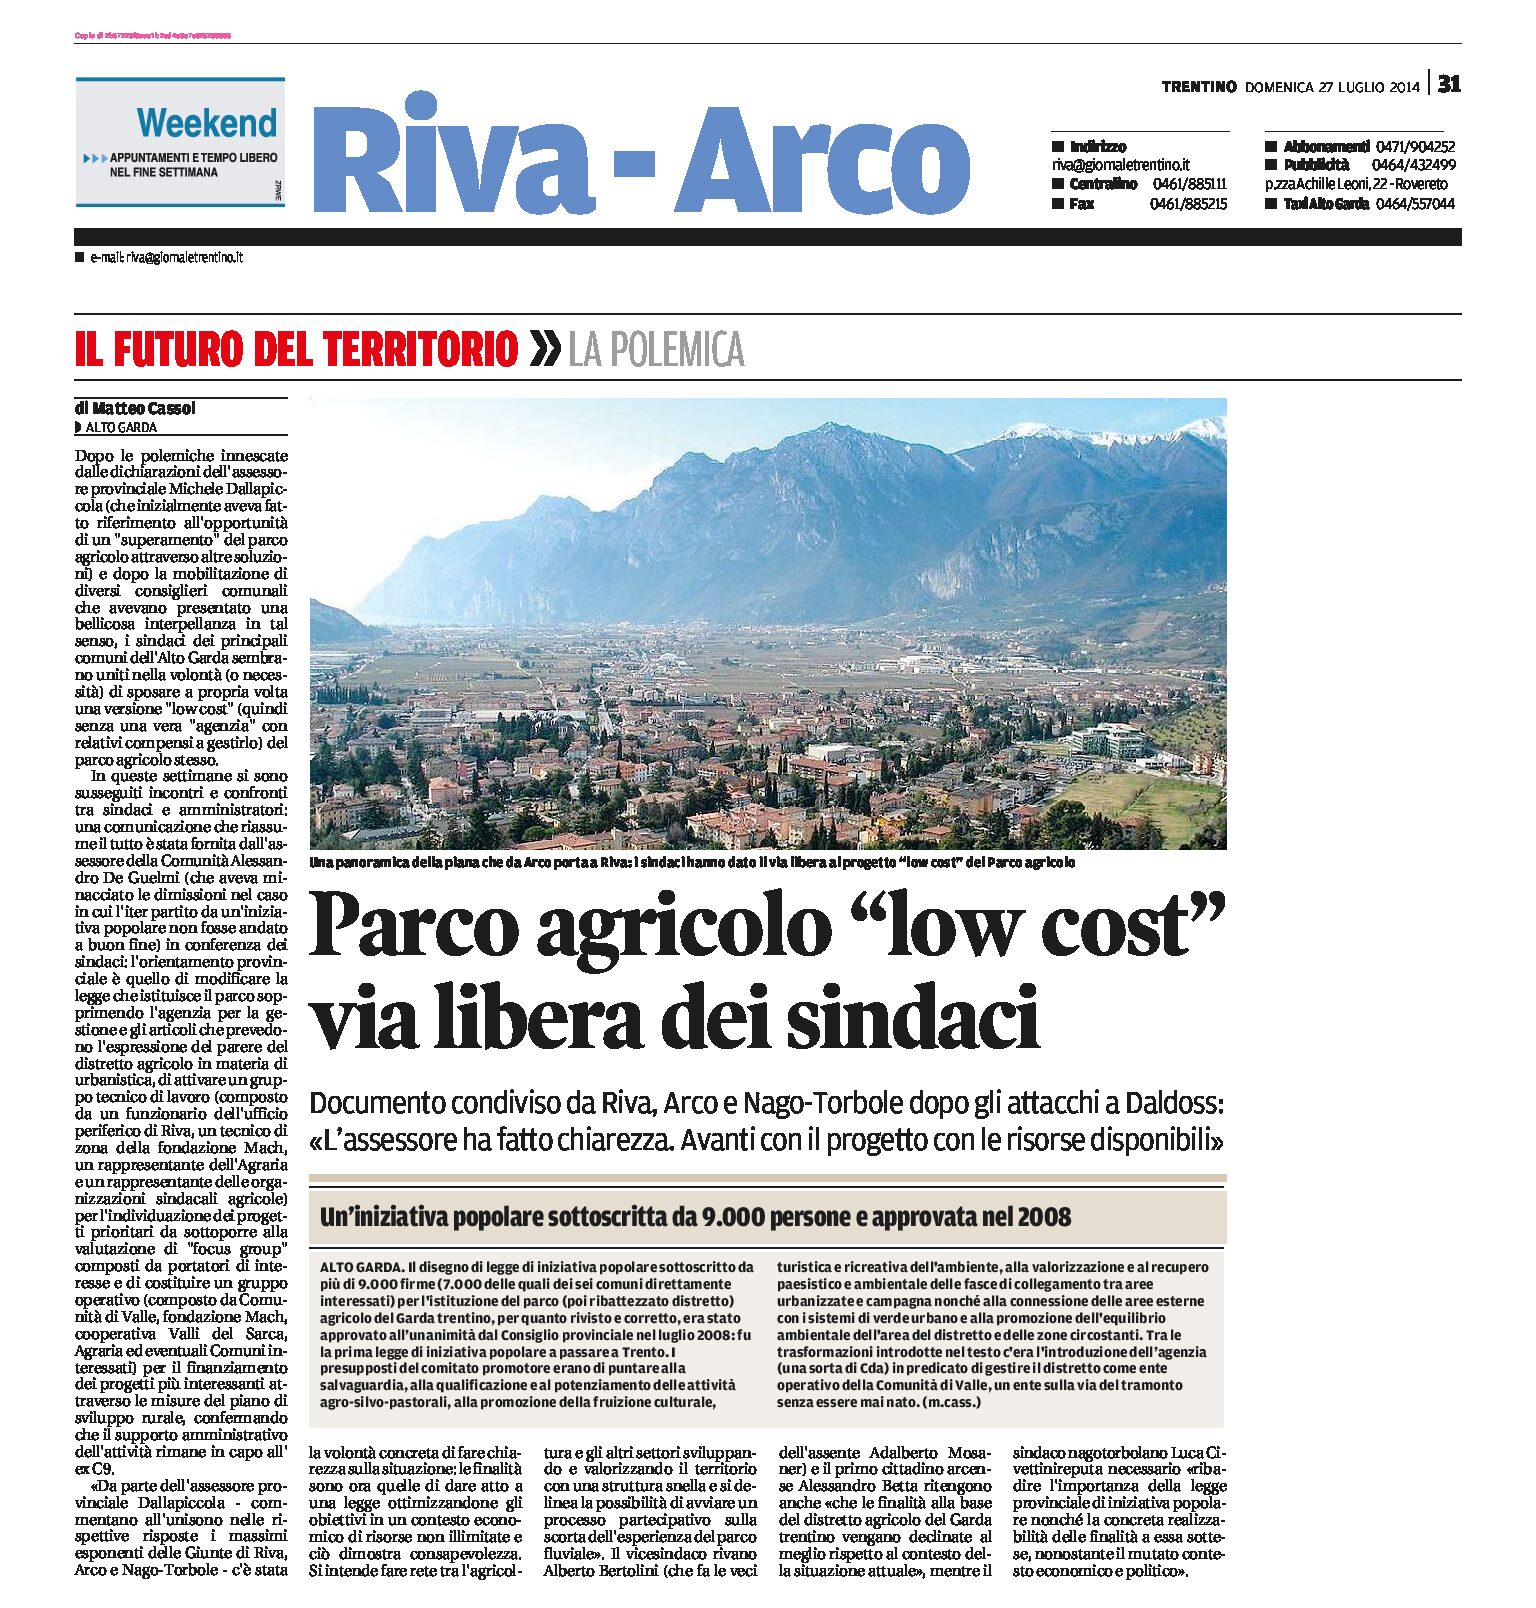 Alto Garda: parco agricolo “low cost”, via libera dei sindaci